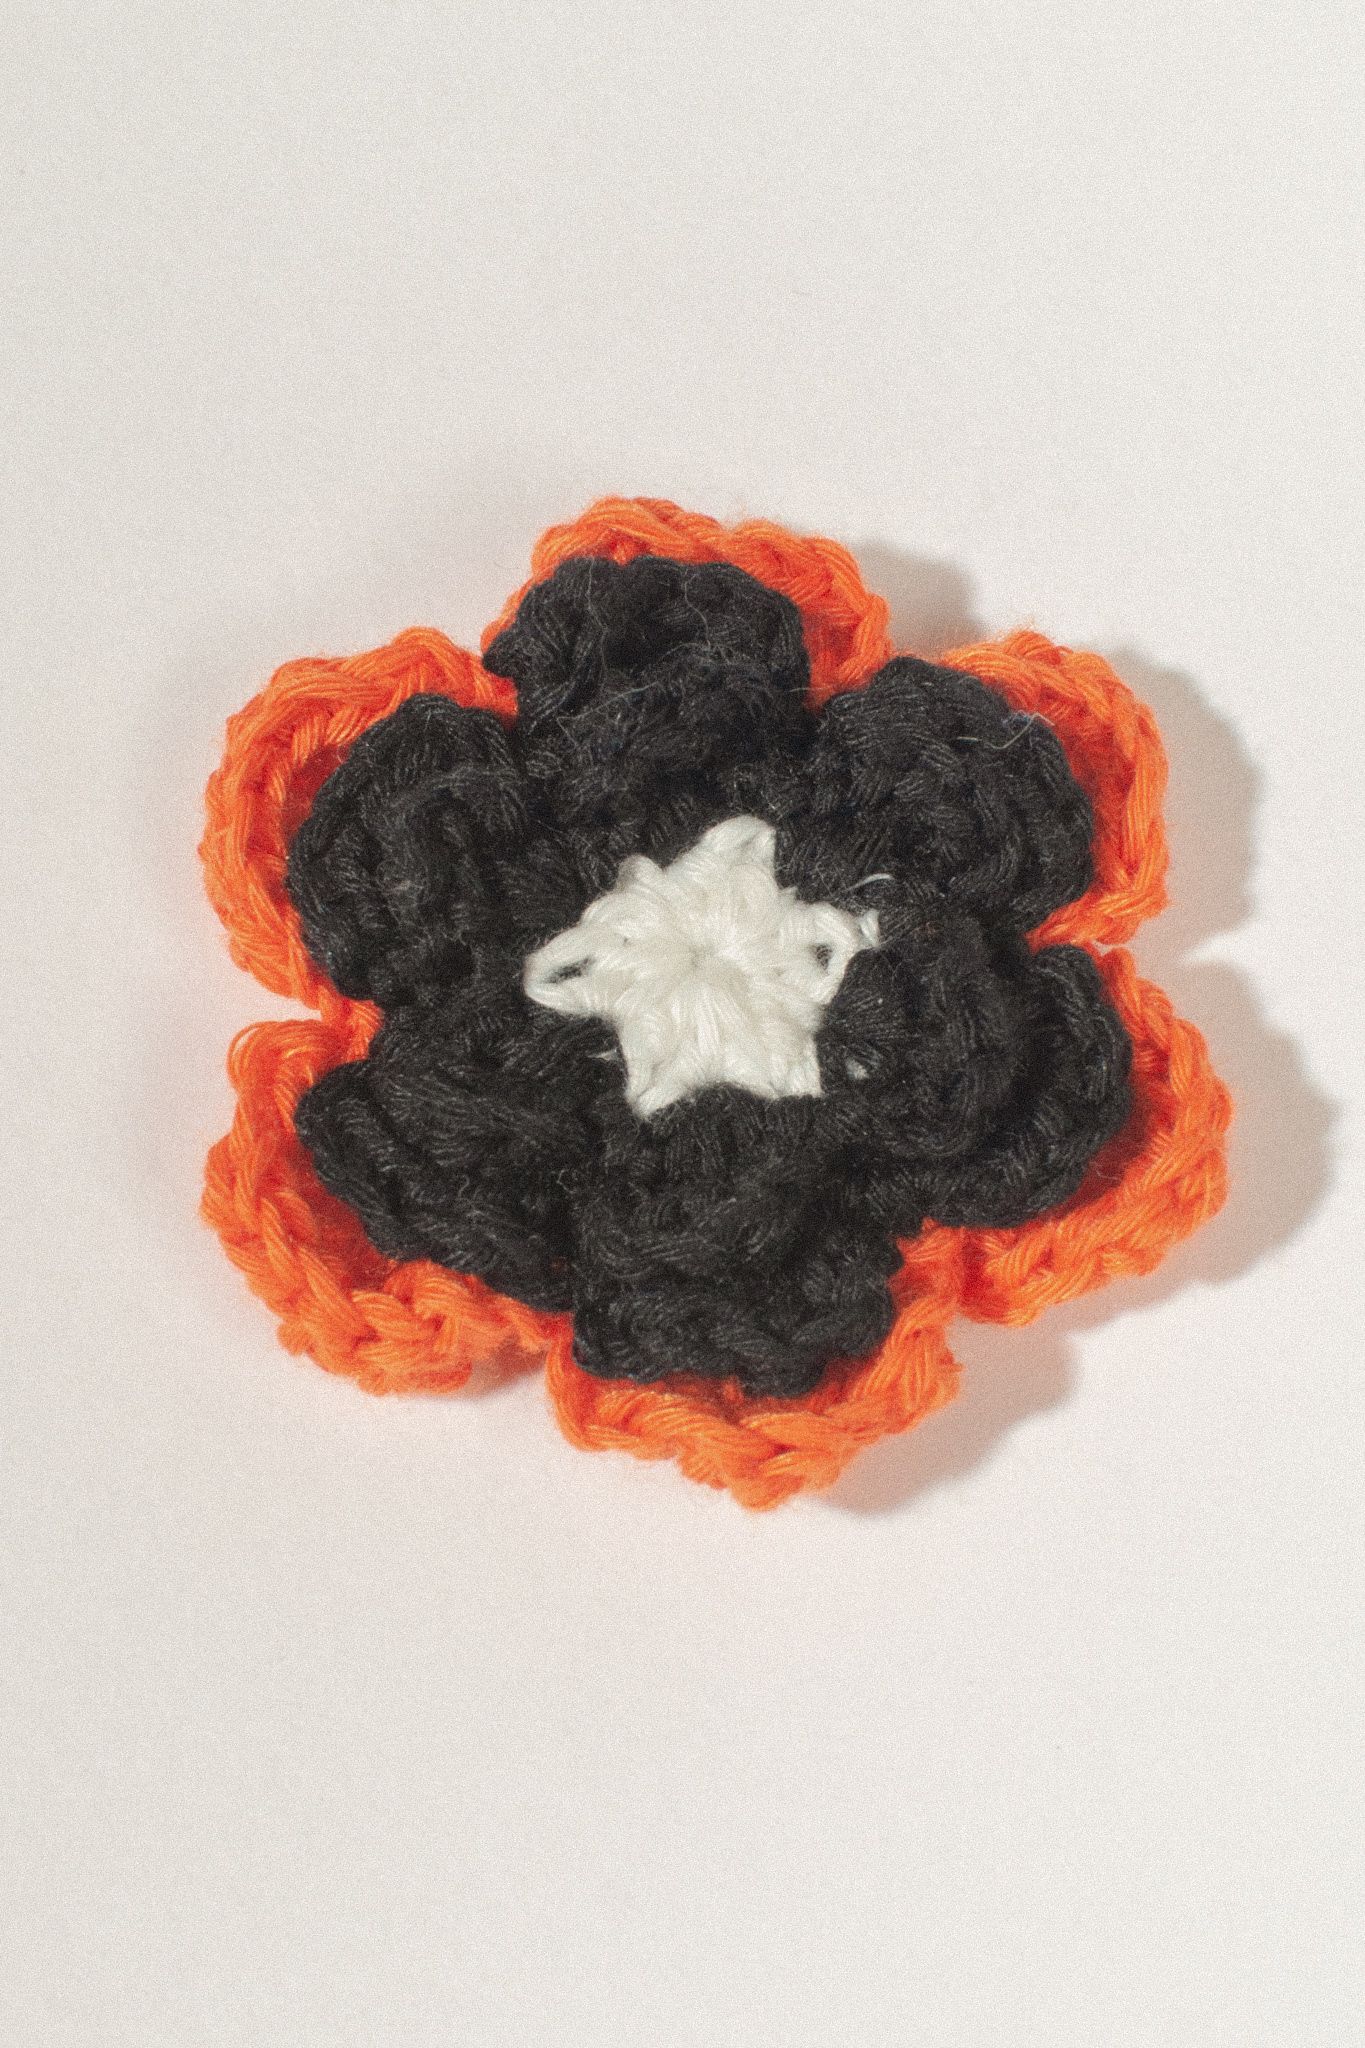  Multicolor Flower Handmade Crochet 